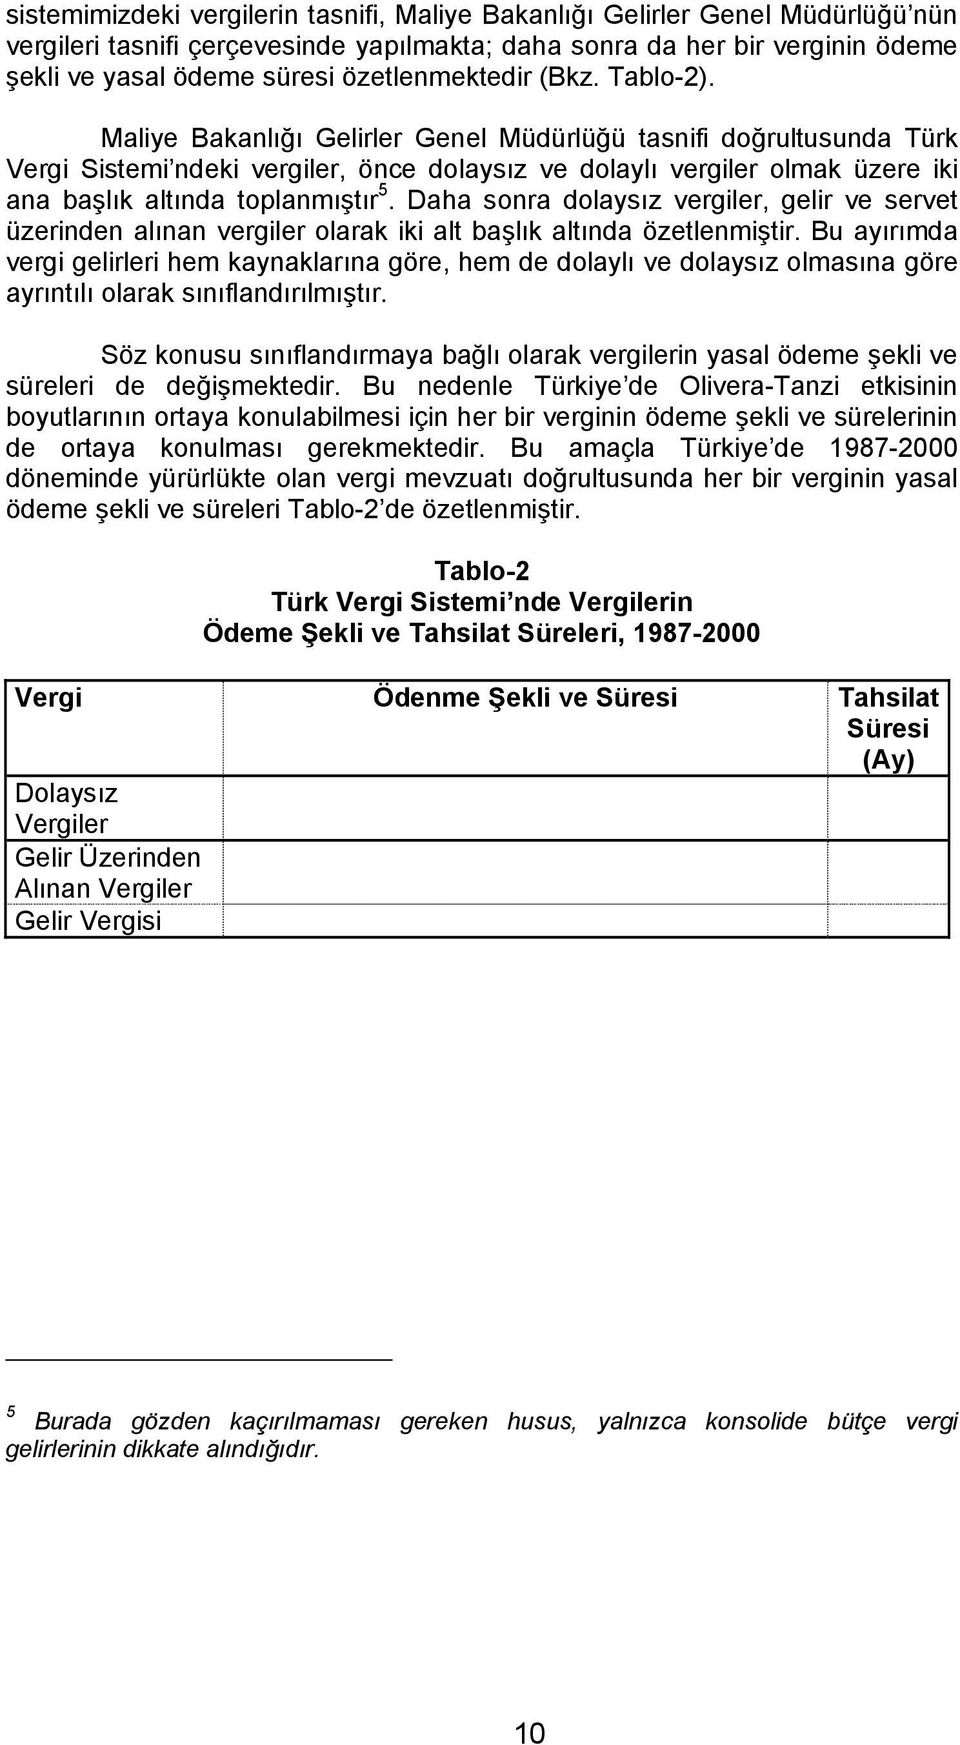 Maliye Bakanlığı Gelirler Genel Müdürlüğü tasnifi doğrultusunda Türk Vergi Sistemi ndeki vergiler, önce dolaysız ve dolaylı vergiler olmak üzere iki ana başlık altında toplanmıştır 5.